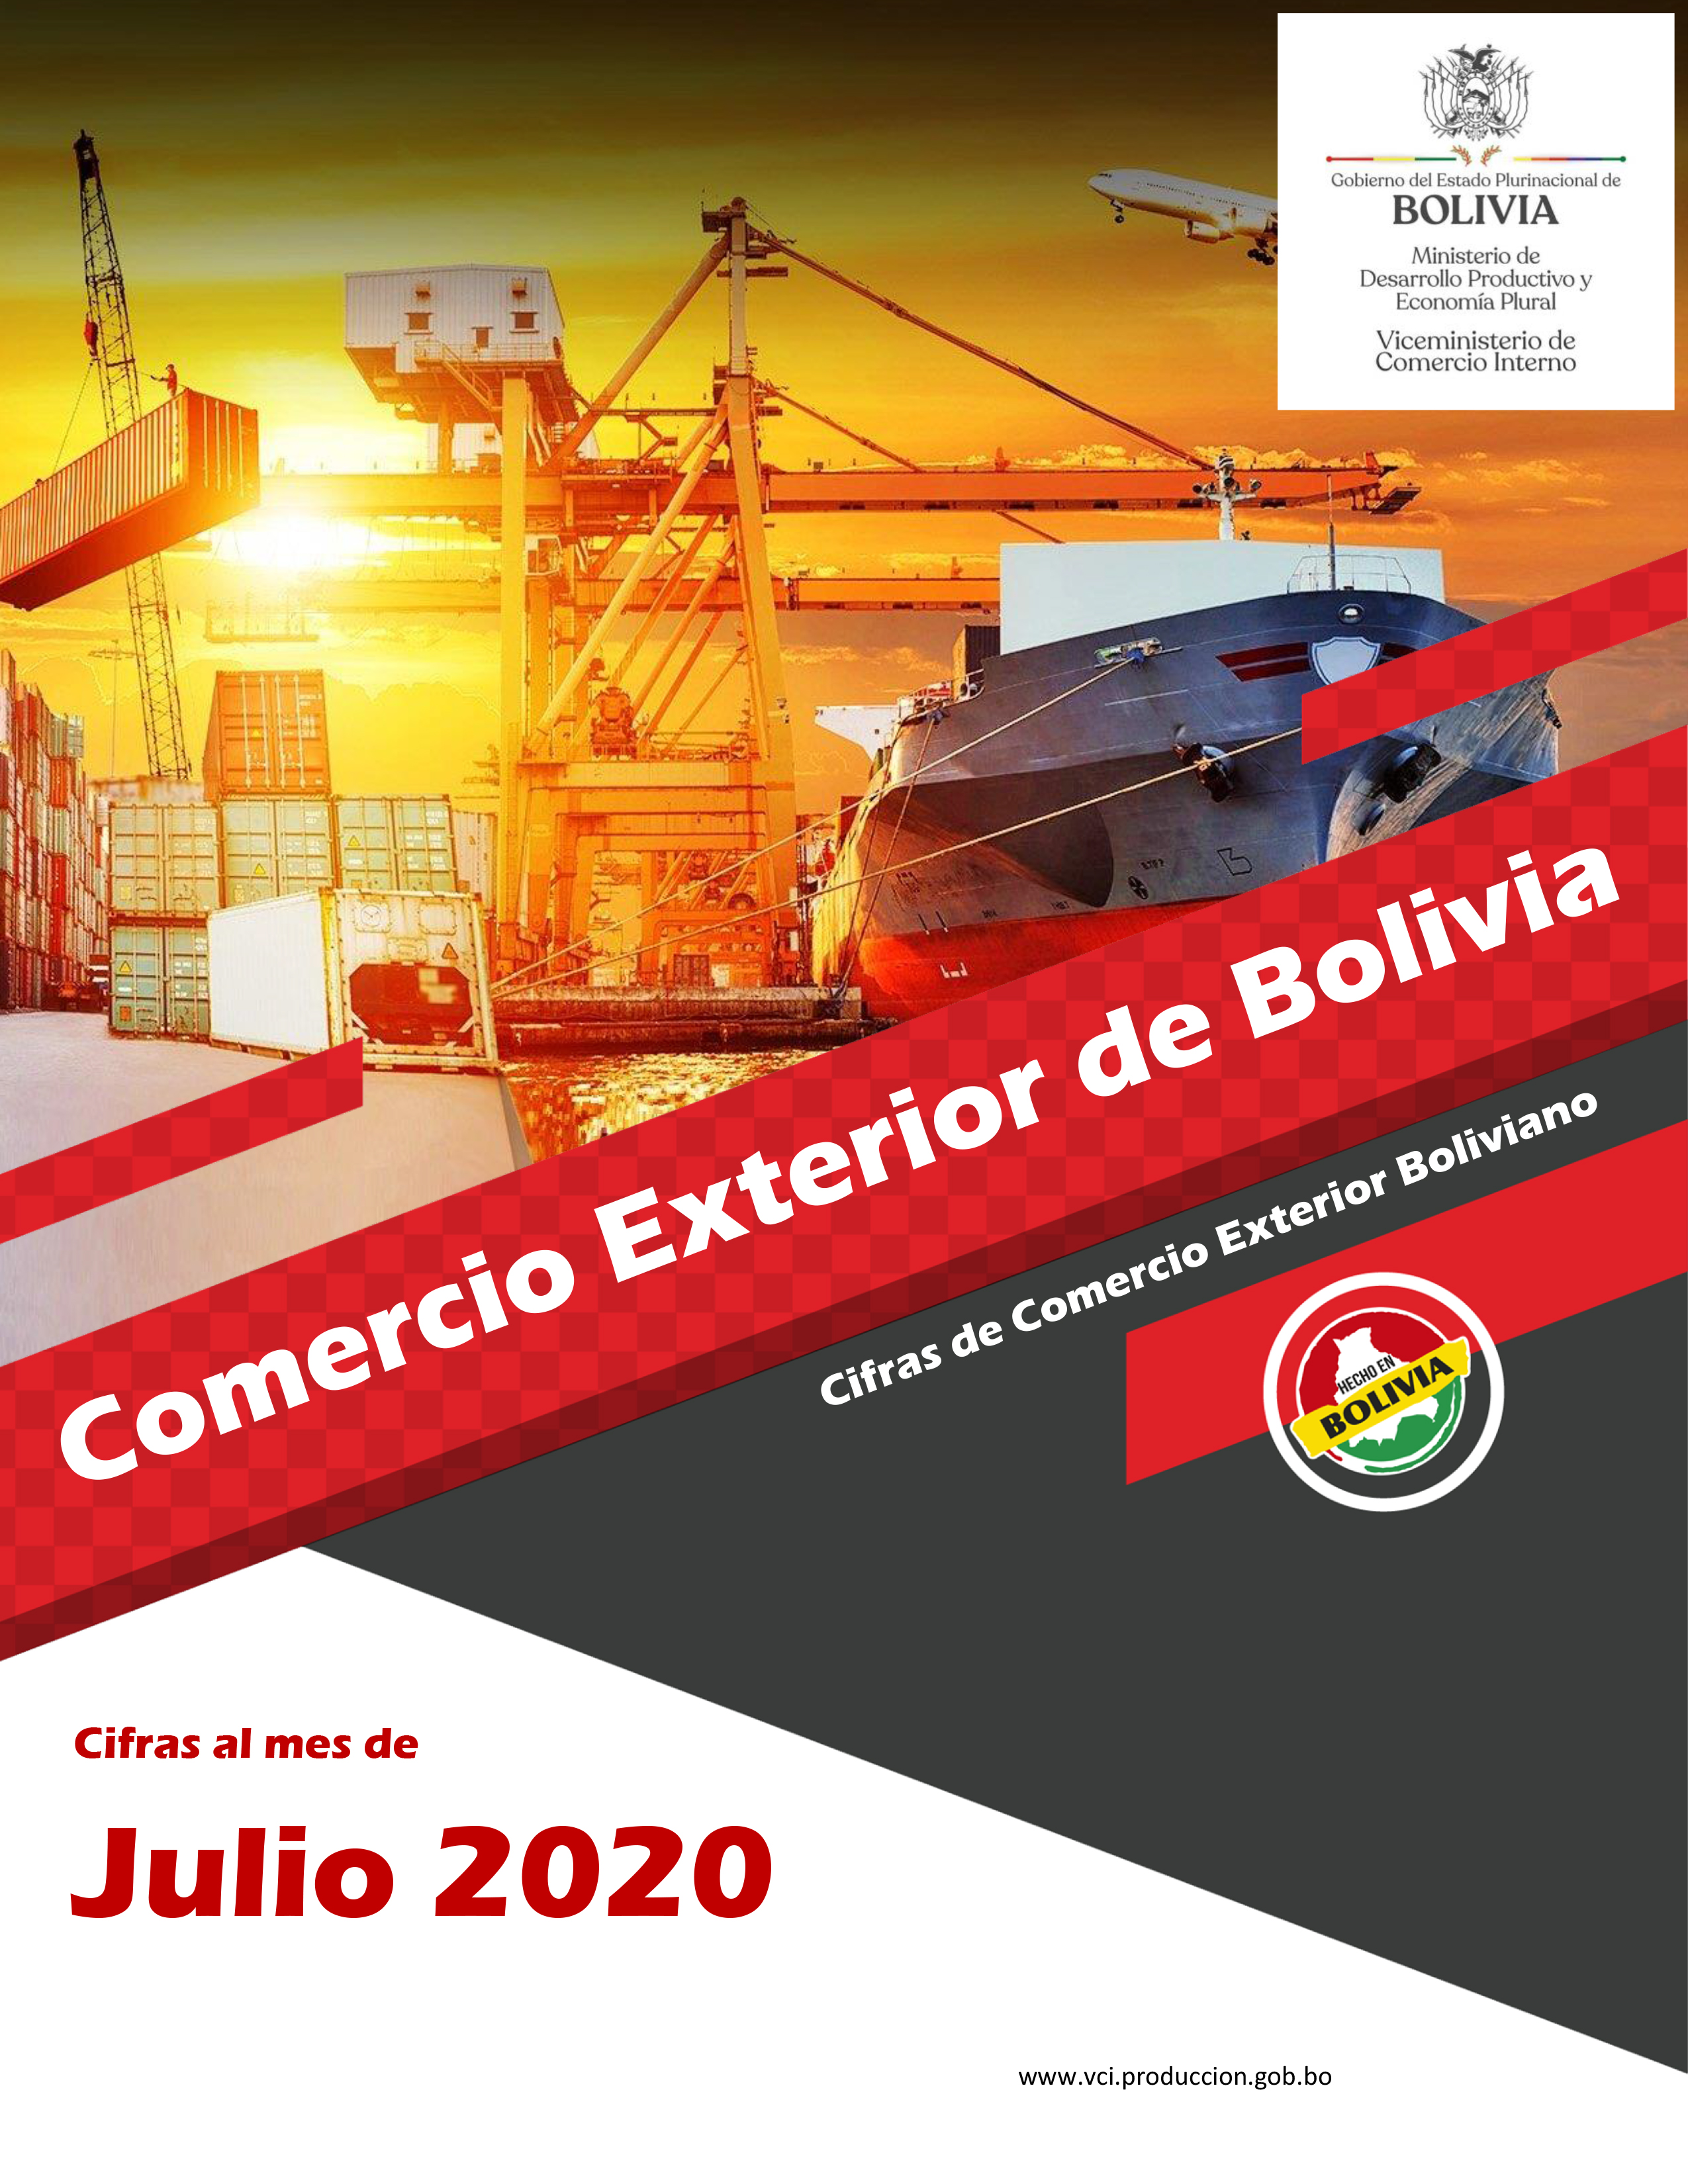 Comercio Exterior de Bolivia